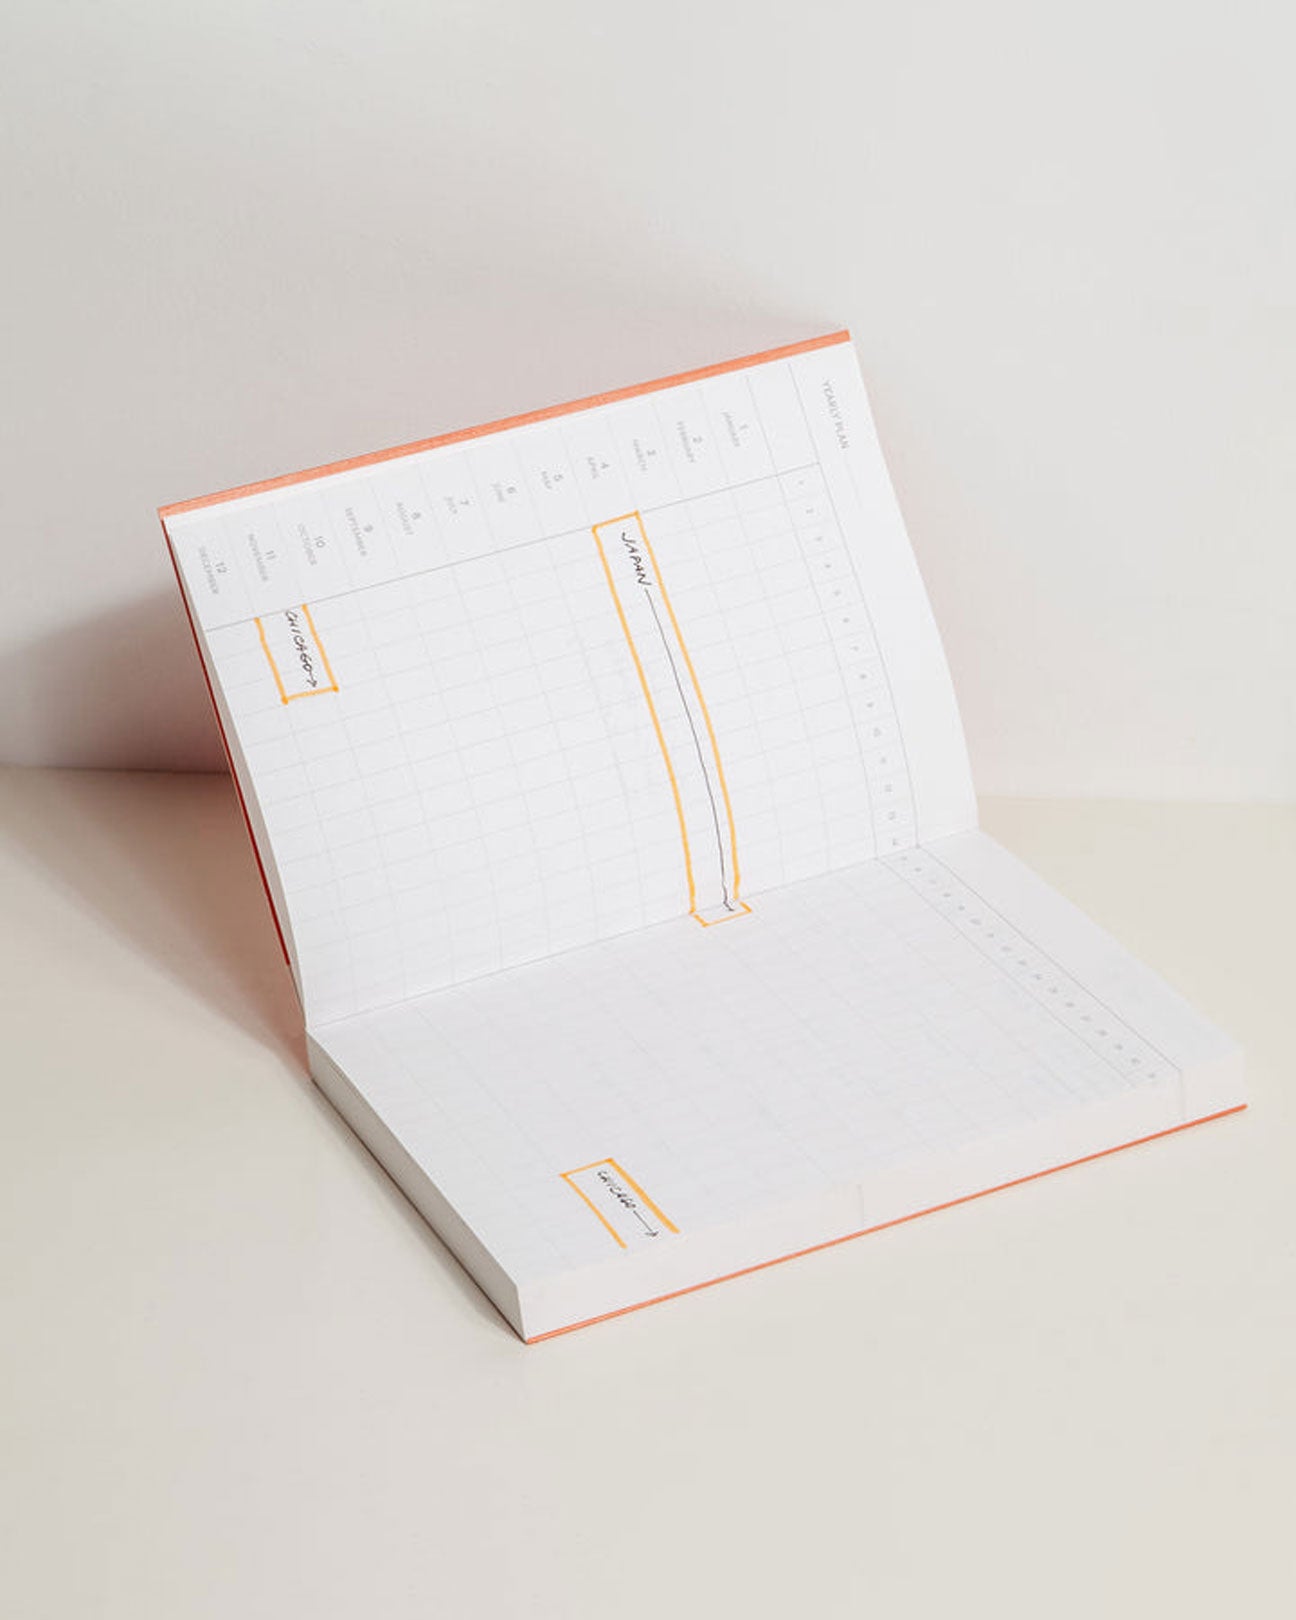 POKETO Concept Planner in Tangerine